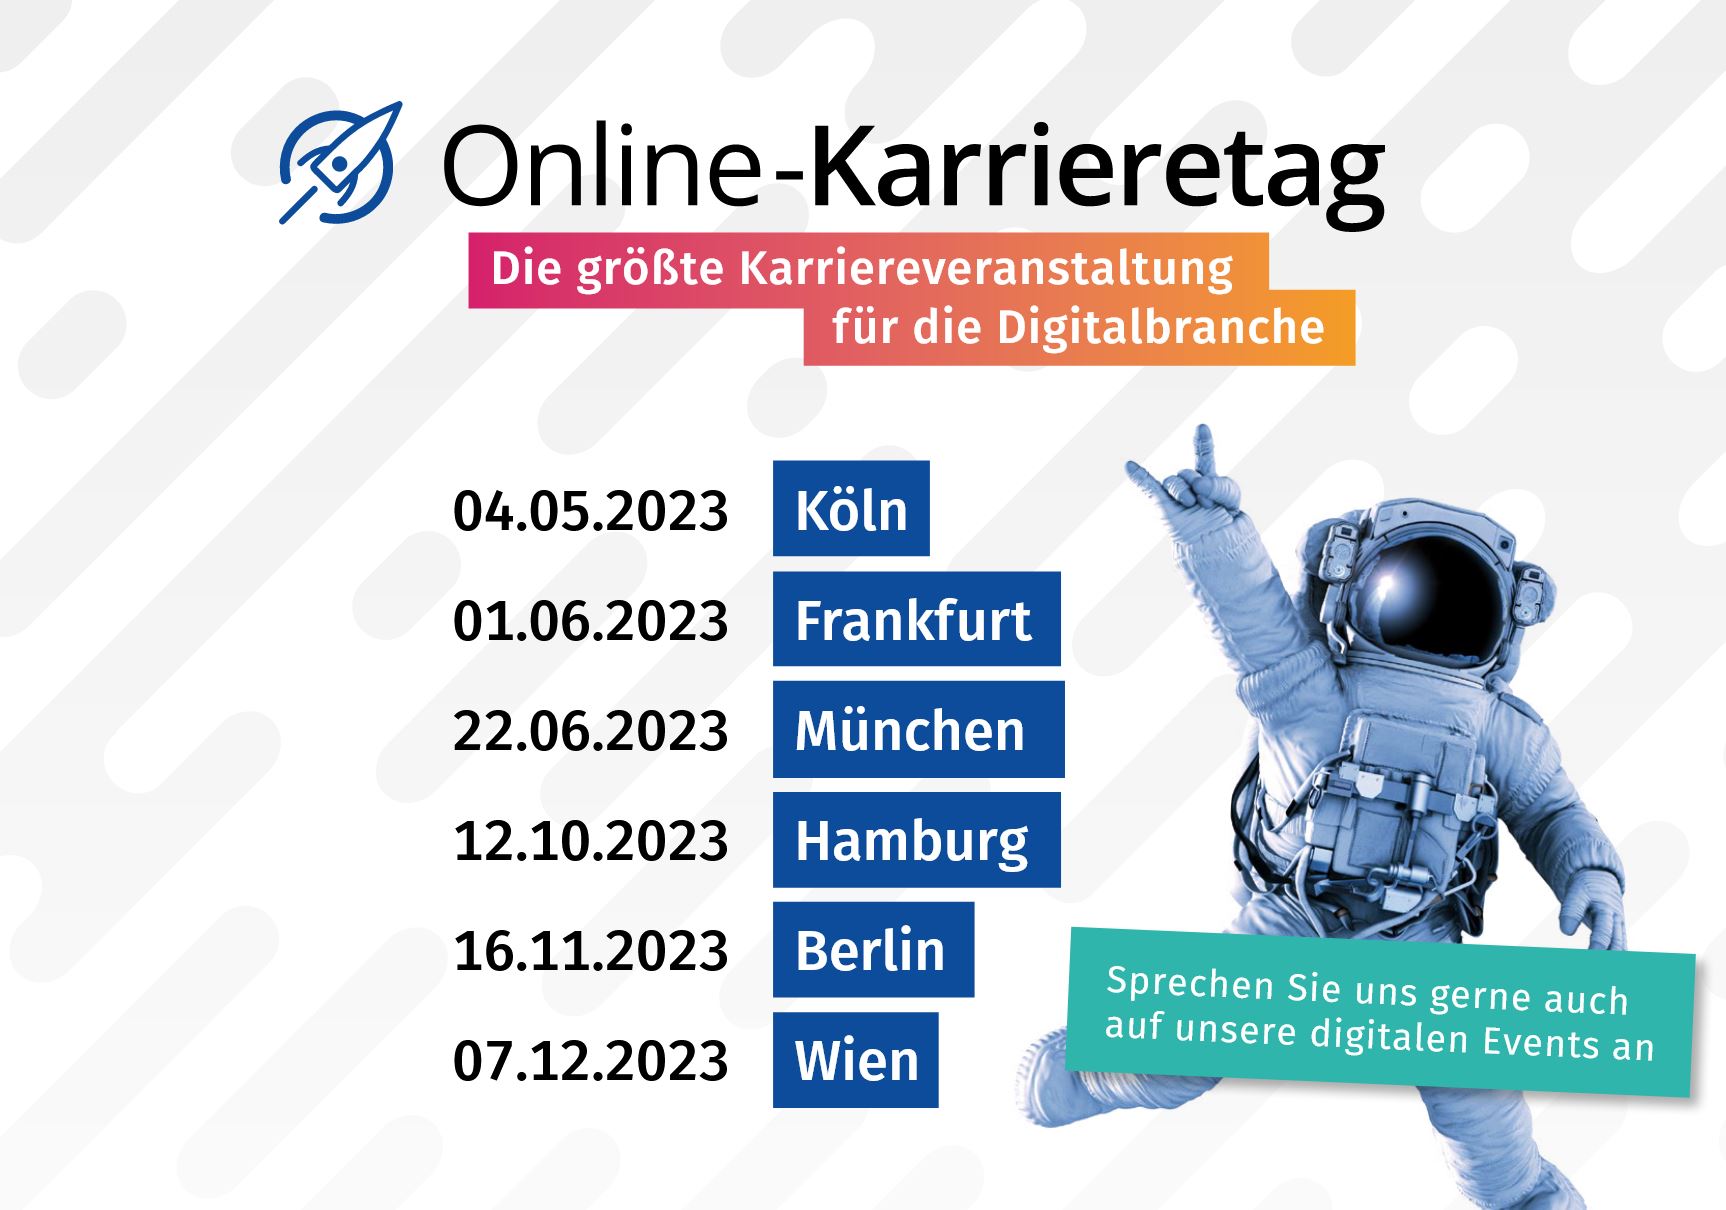 Online-Karrieretag in Frankfurt – Die größte Karriereveranstaltung für die Digitalbranche